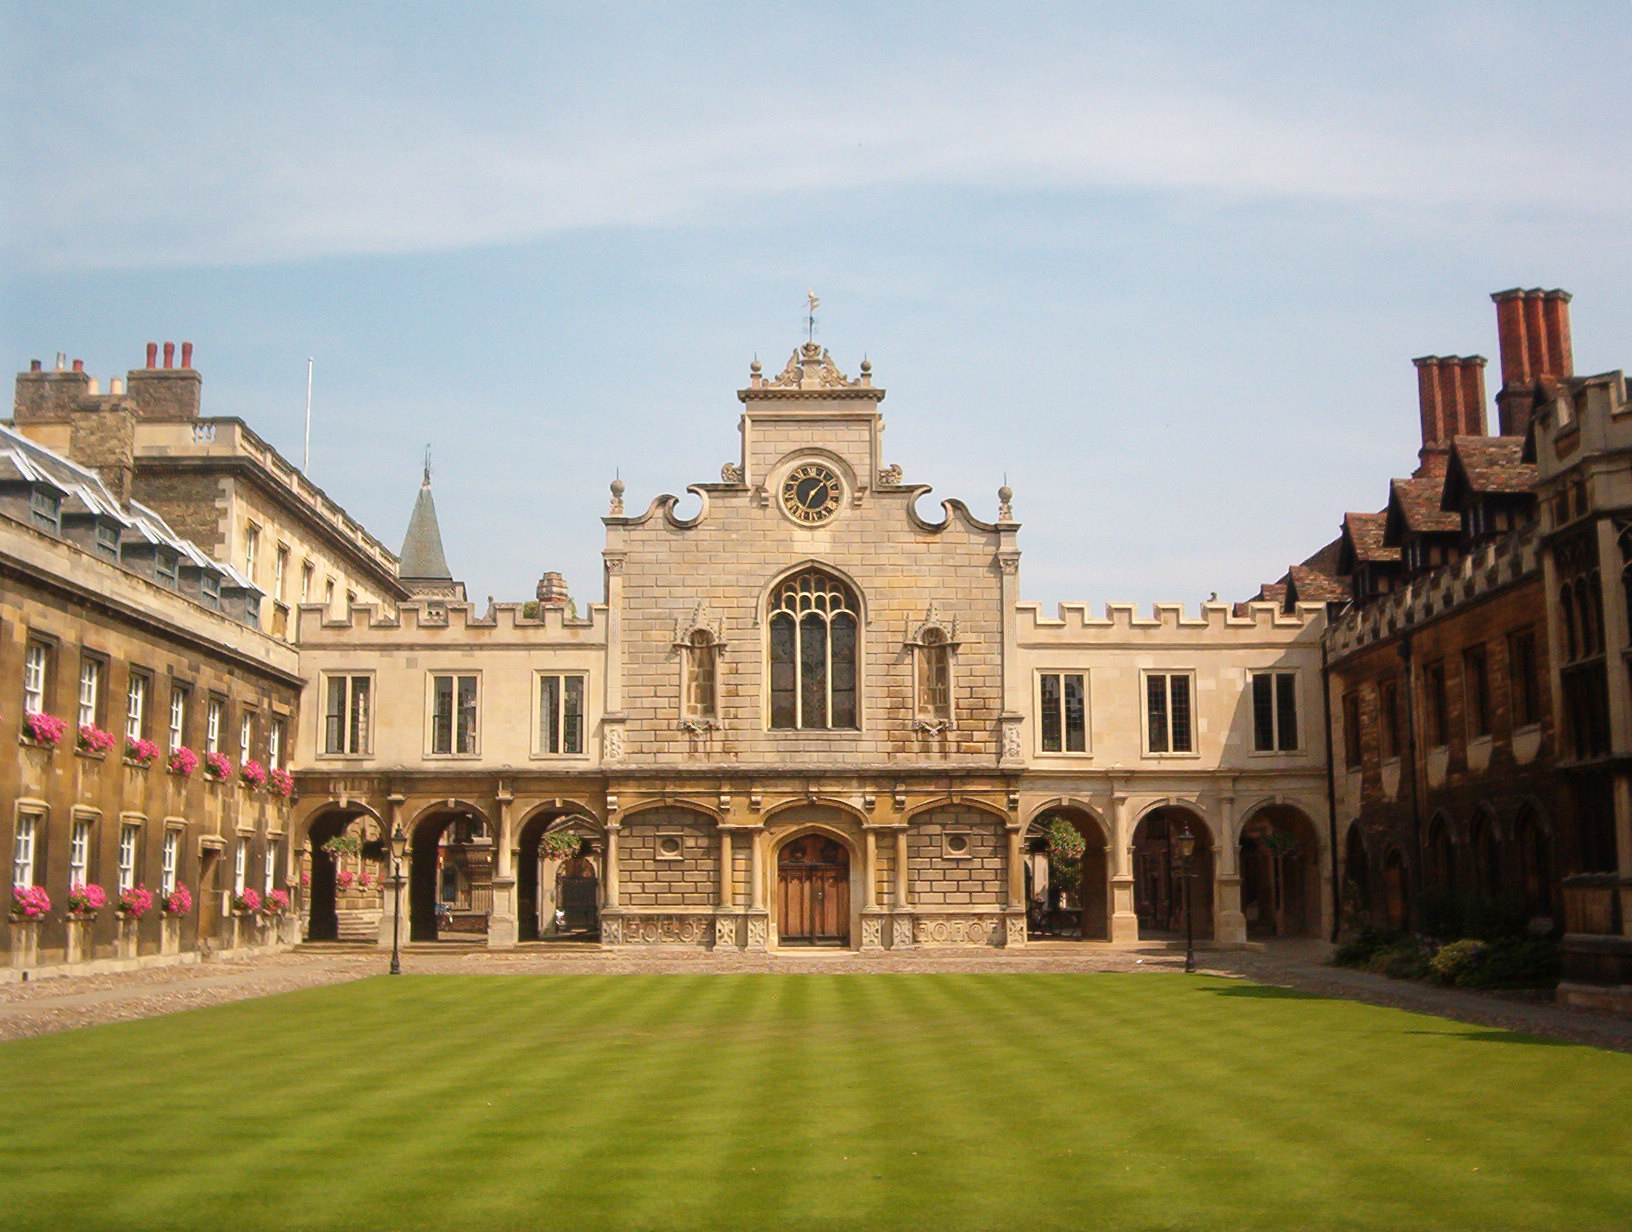 Universitas Cambridge via Wikipedia